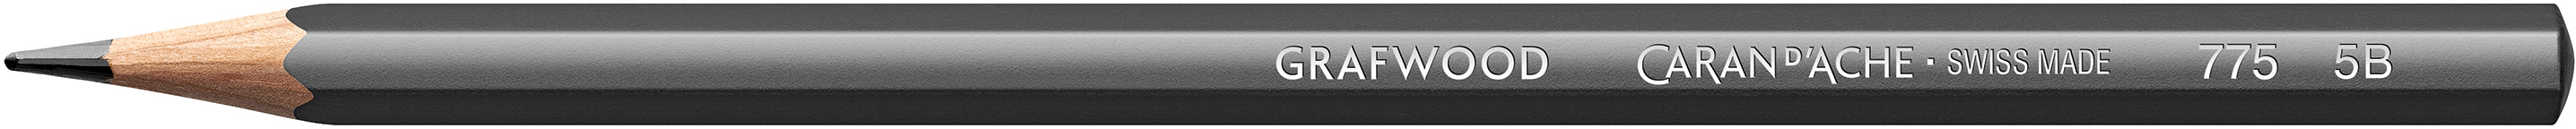 CARAN D'ACHE Crayon Grafwood 5B 775.255